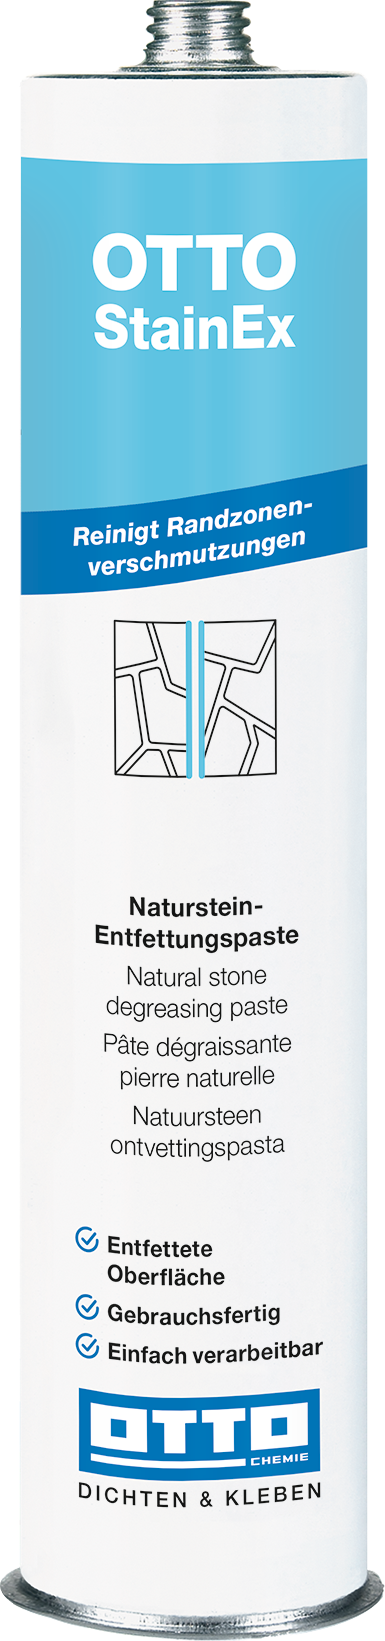 OTTO StainEx Die Marmor- und Naturstein-Entfettungspaste